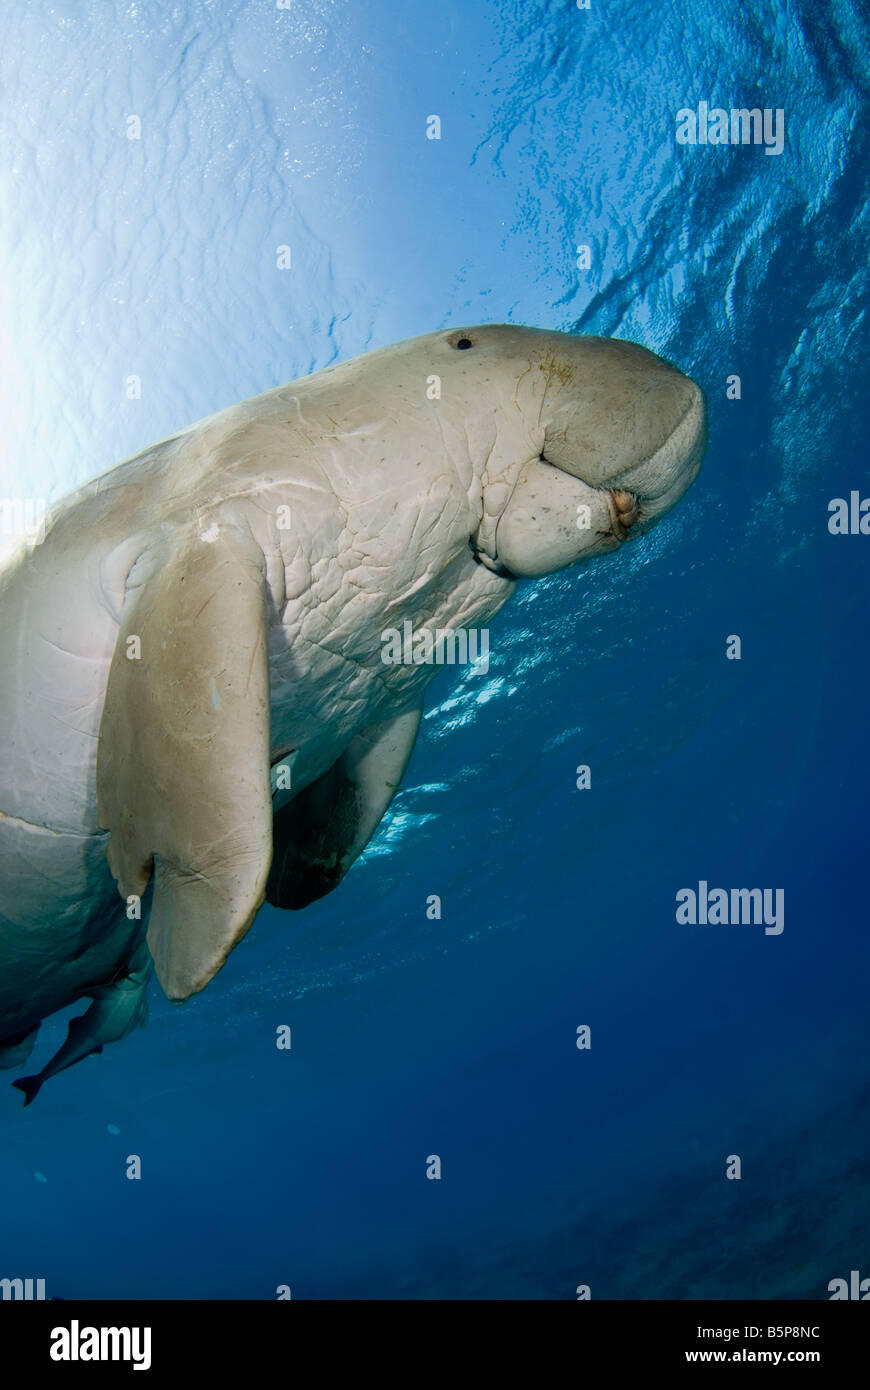 Dugong Sea Cow natation jusqu'à la surface pour respirer Gnathanodon Speciosus Egypte Mer Rouge Océan Indien Banque D'Images